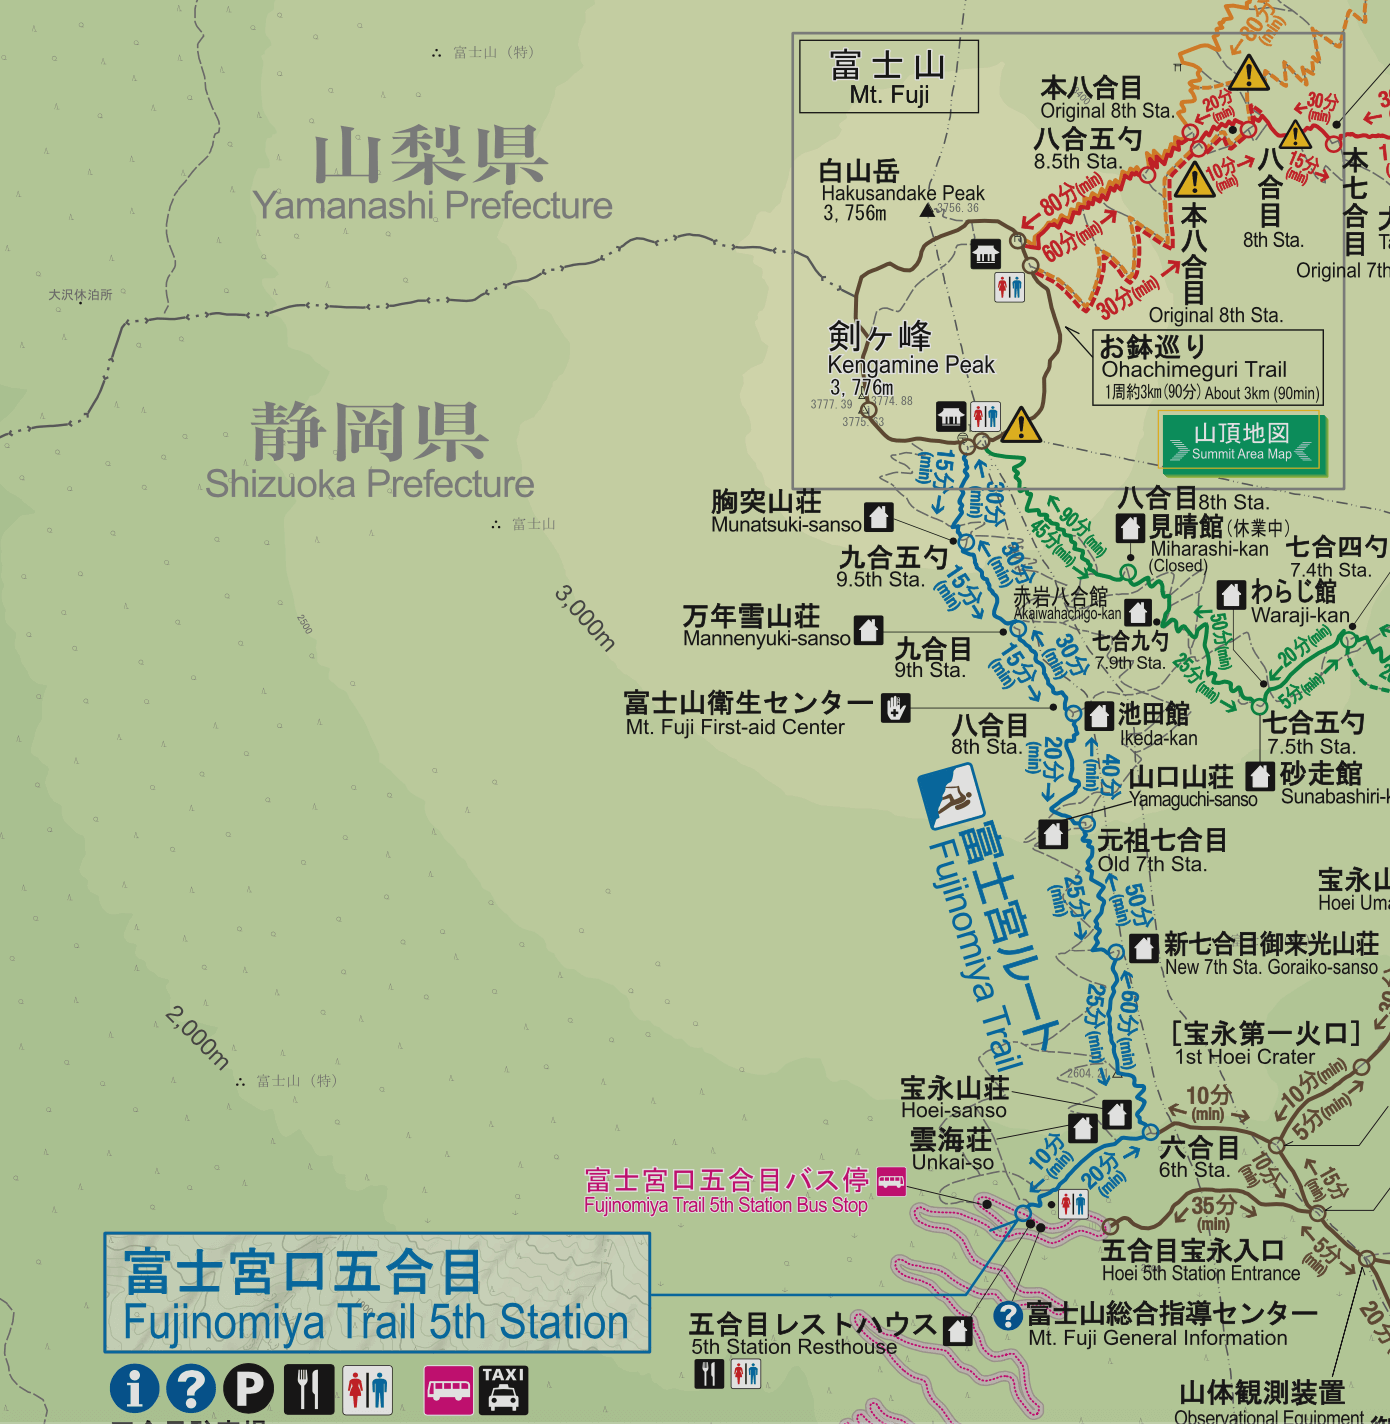 第二條介紹的富士山登山路線是富士宮路線，是多條路線中最短的一條富士山登山路線。